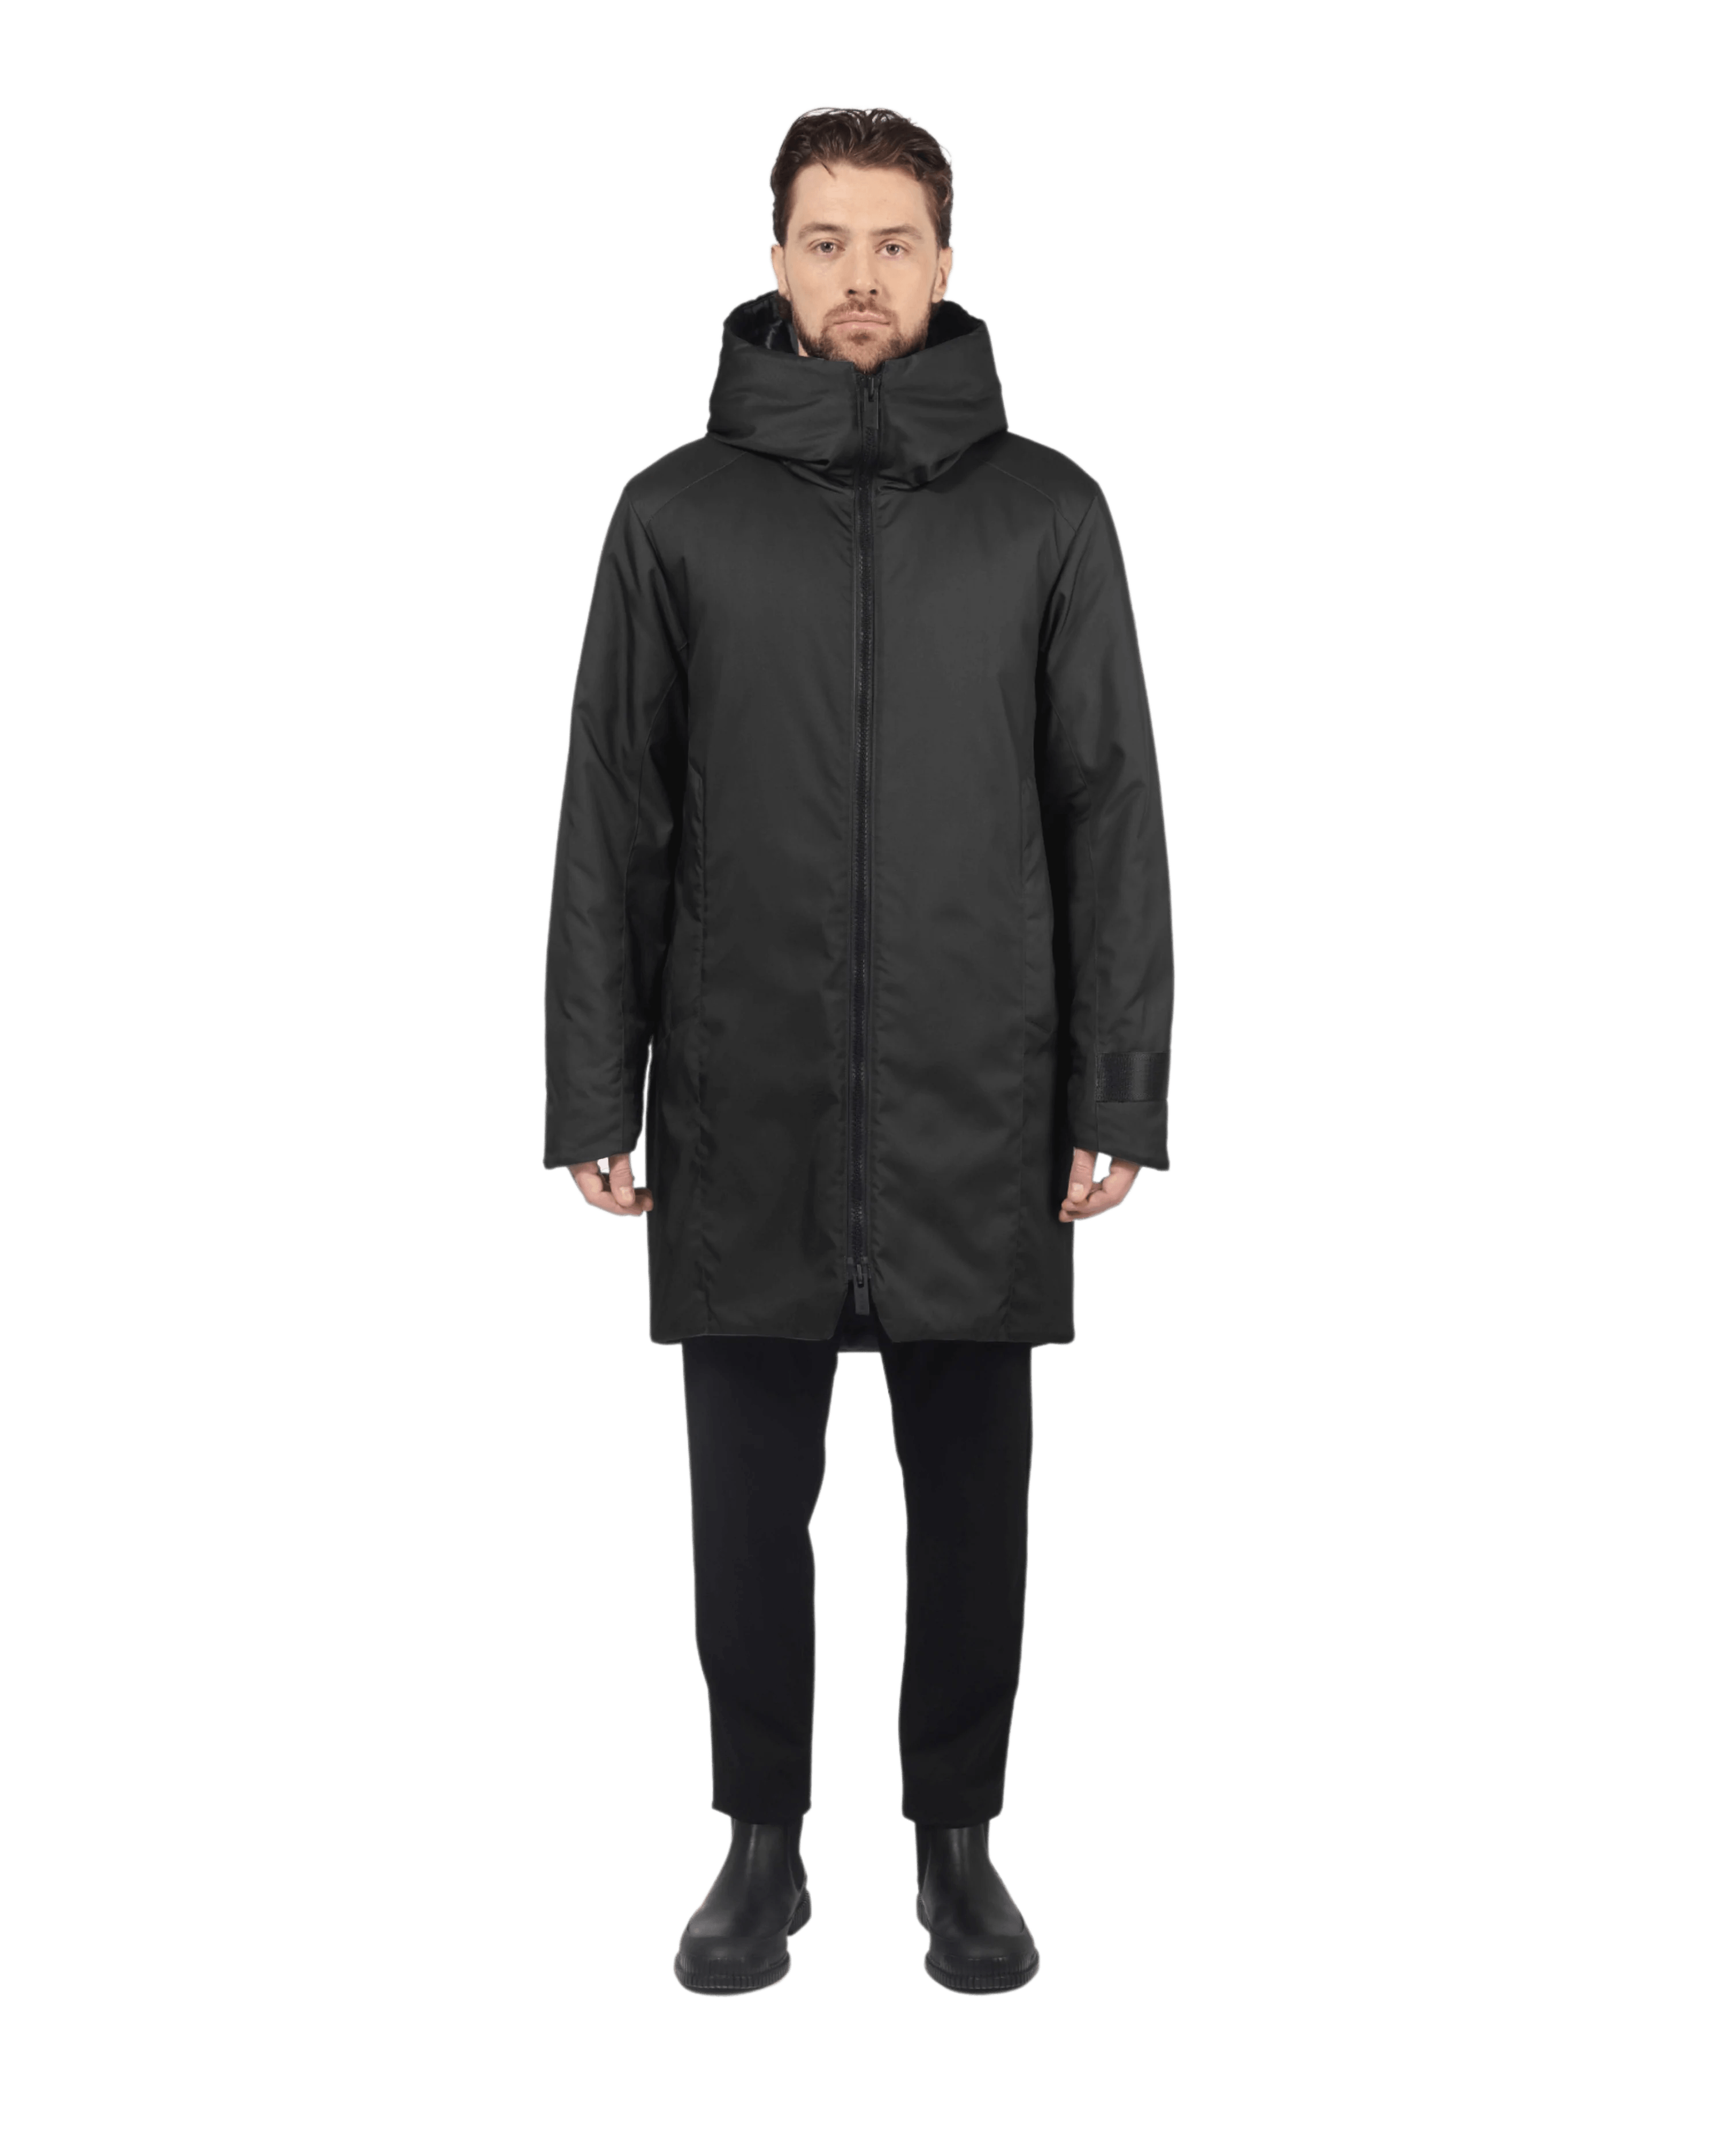 Men coats & jackets – Tagged 